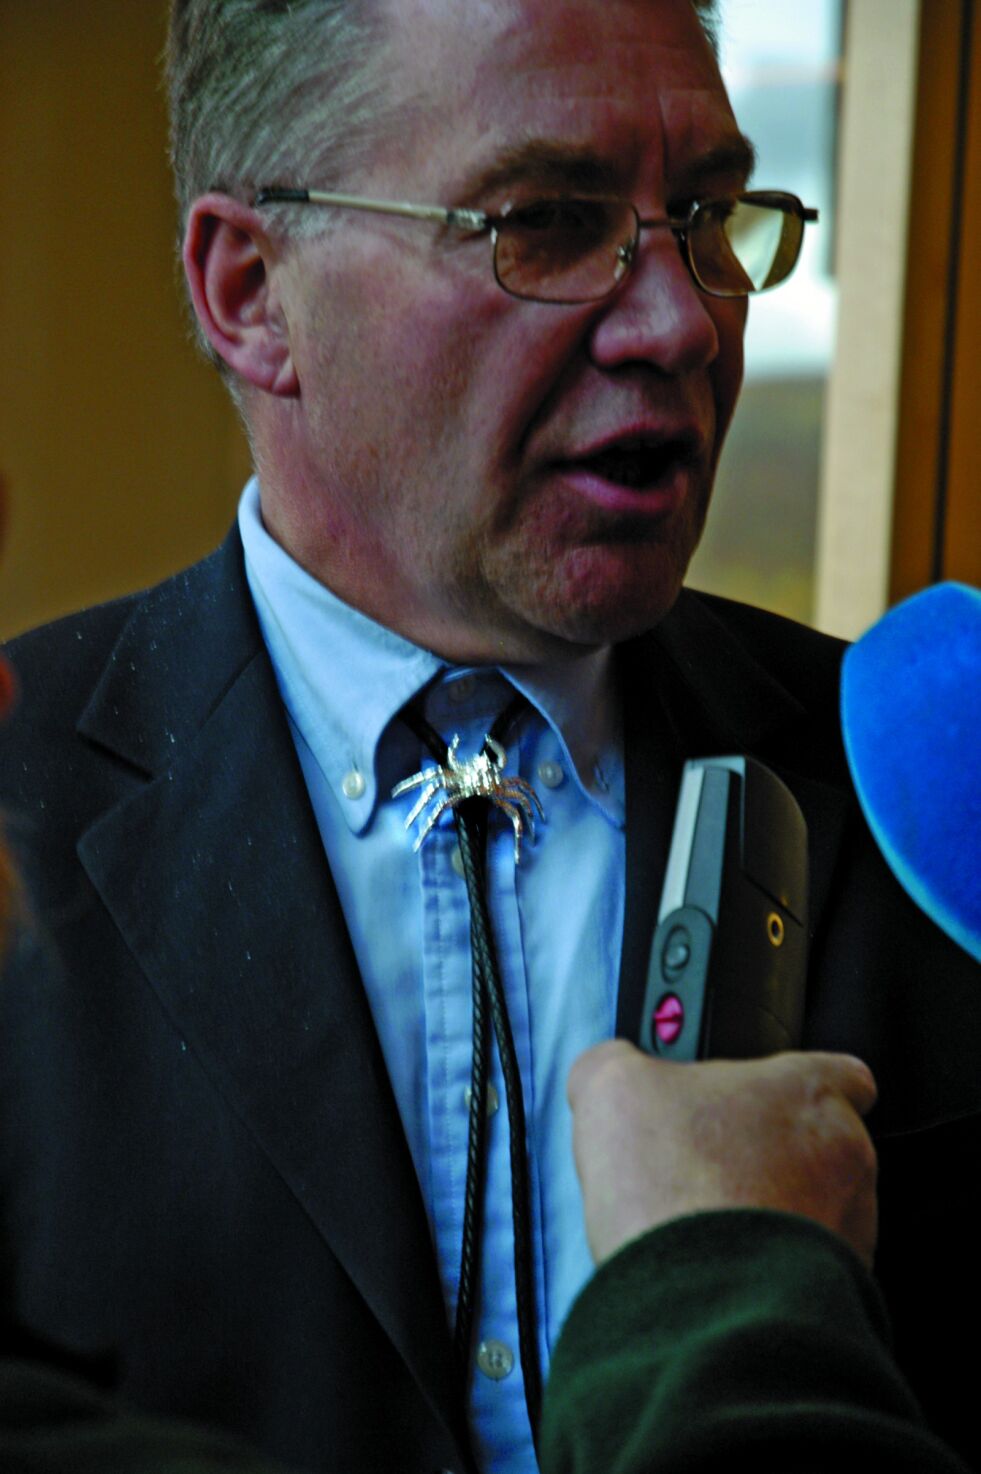 Svein Ludvigsen intervjues på Sametinget i 2004, i egenskap av hans besøk der som fiskeriminister.
 Foto: Lars Birger Persen